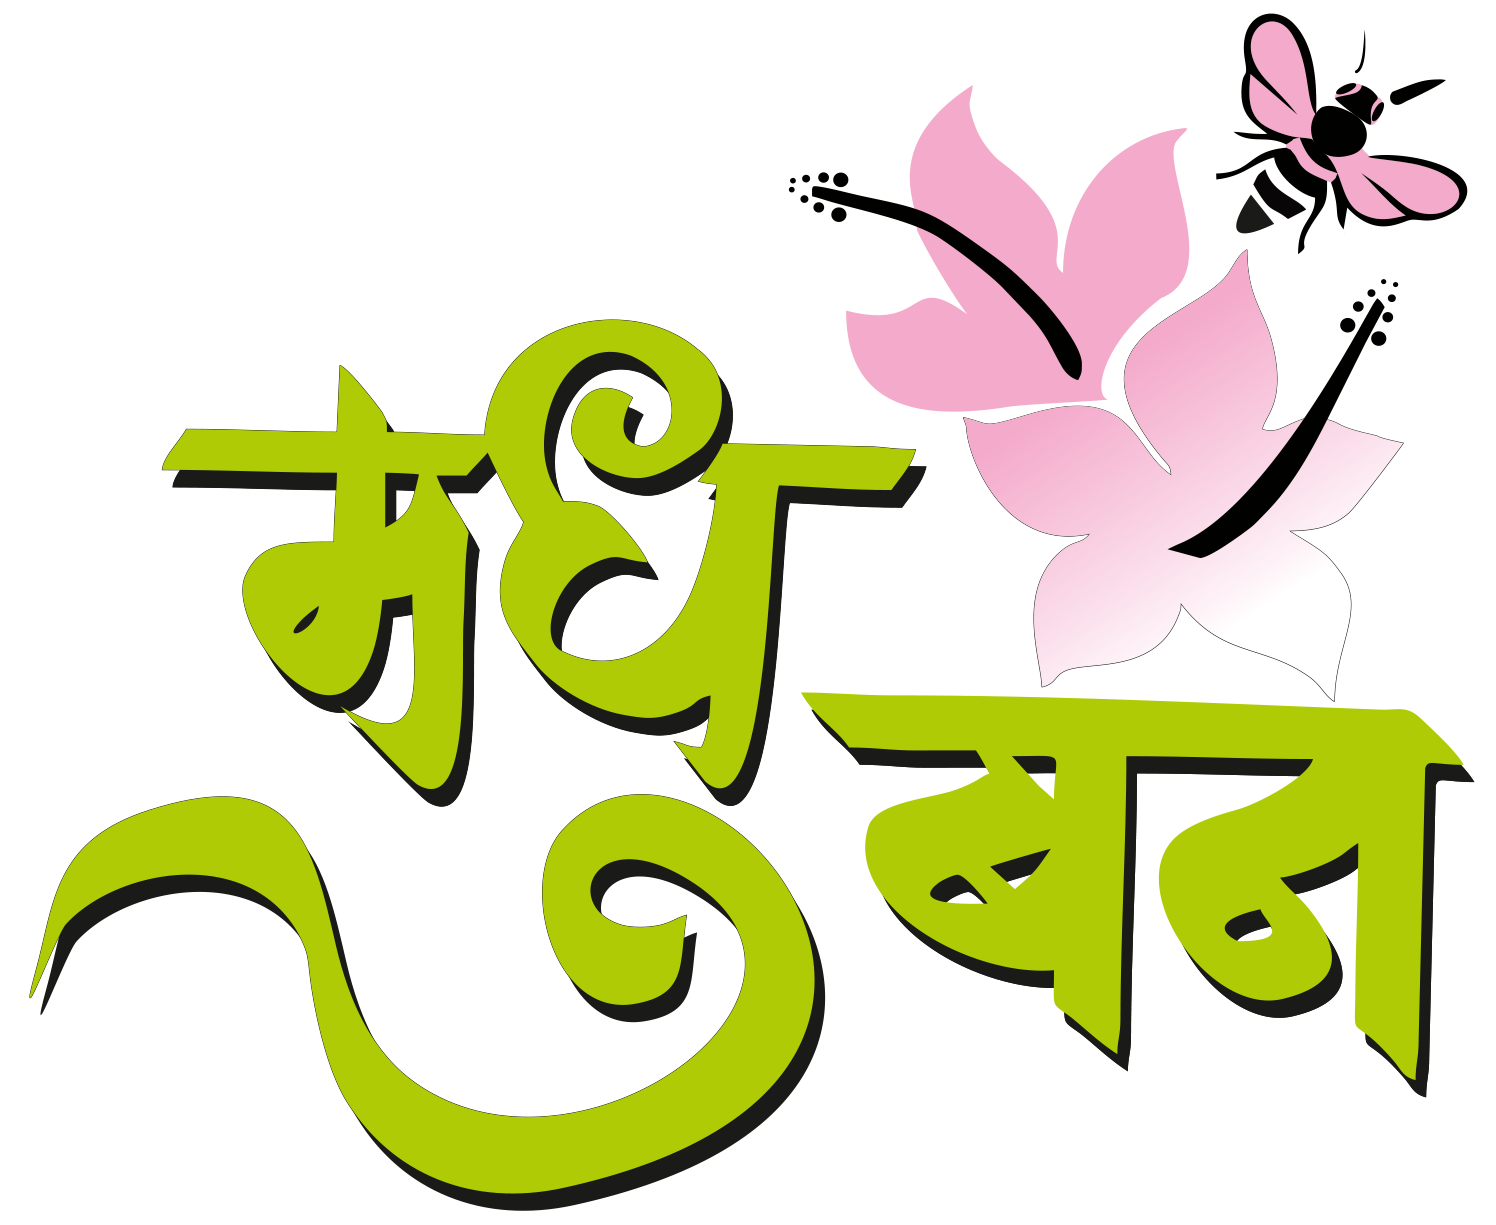 Madhuban Logo